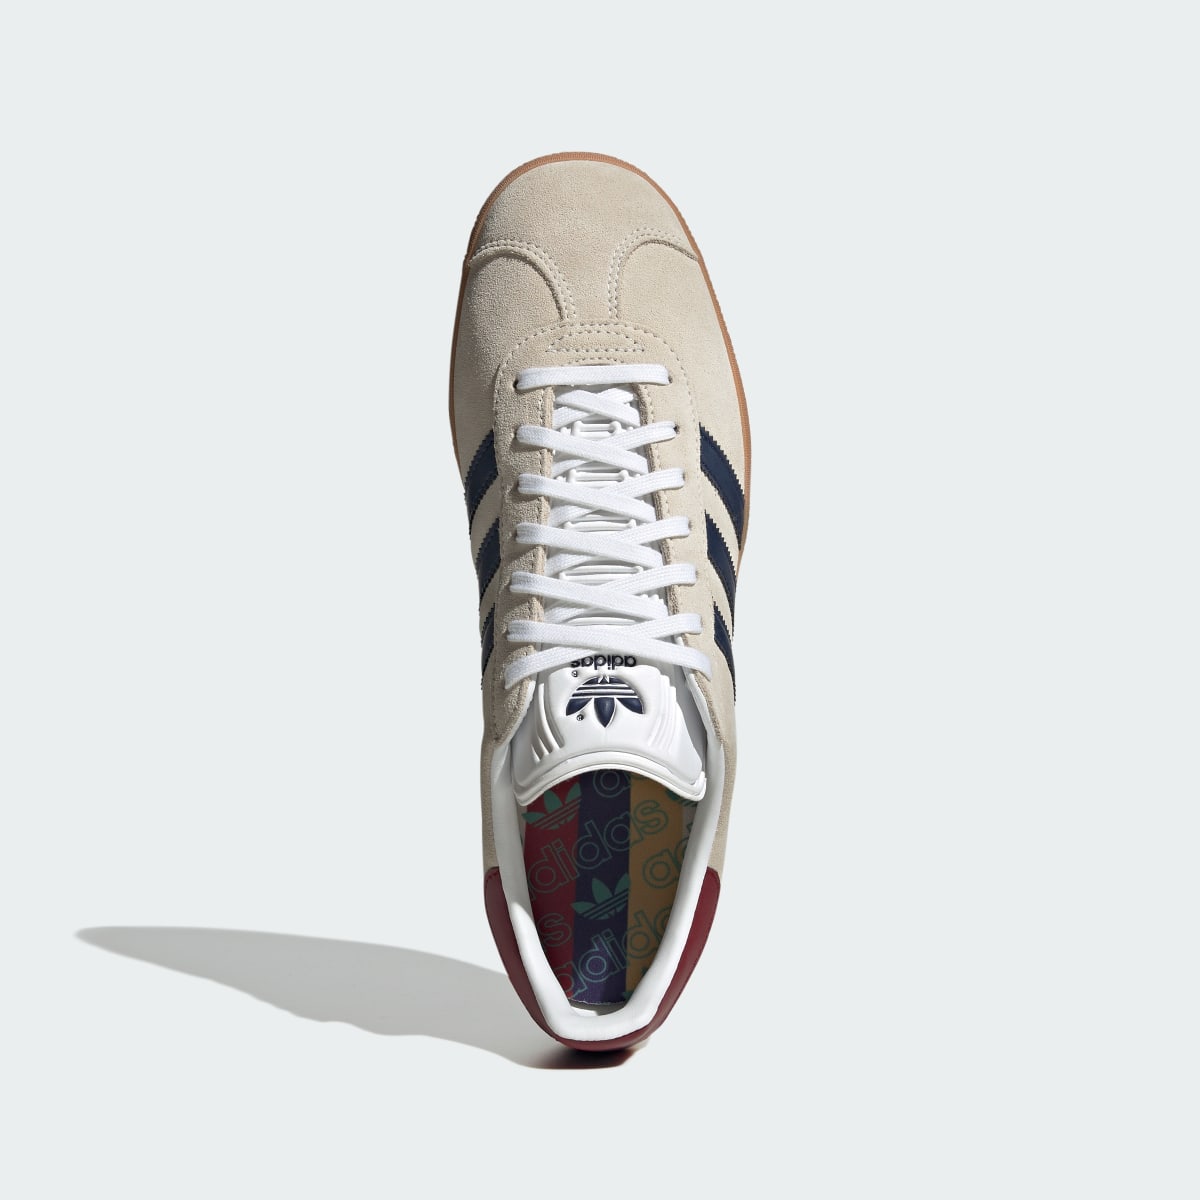 Adidas Gazelle Schuh. 6